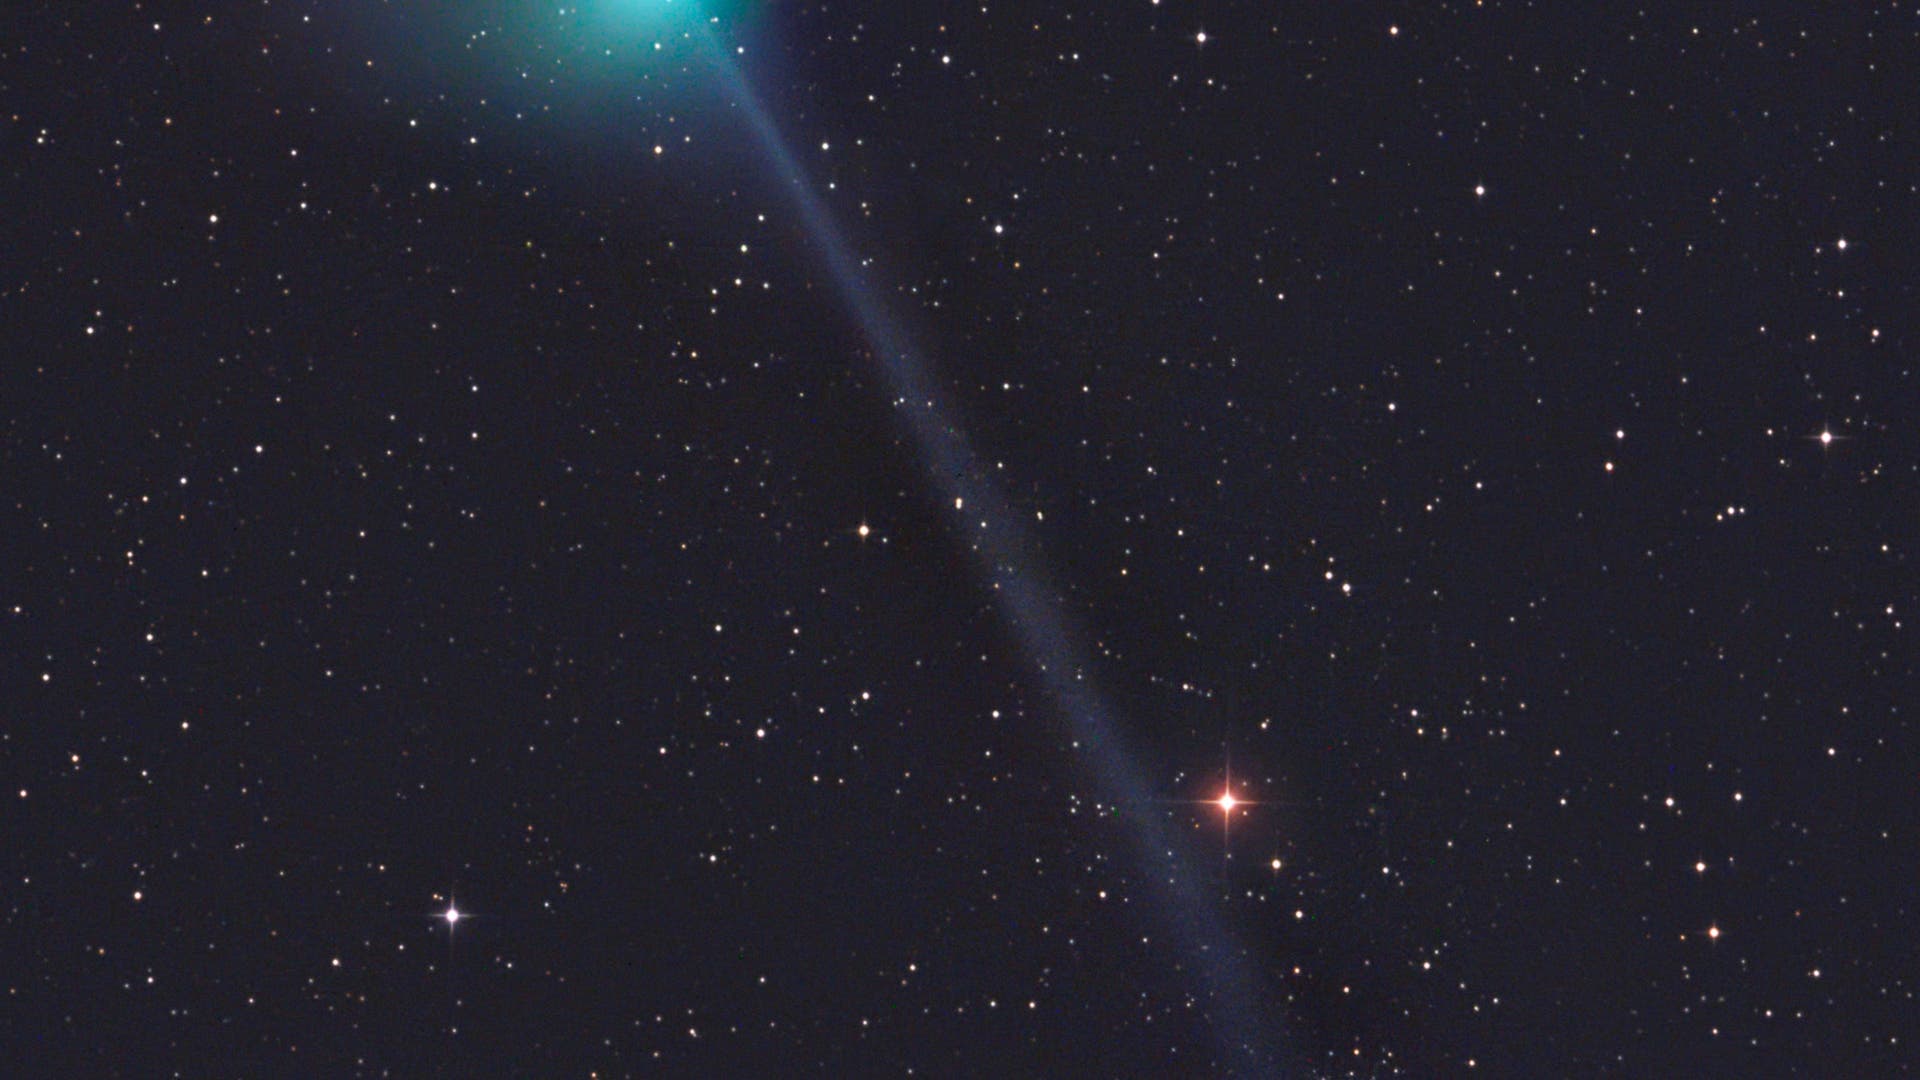 Komet Catalina überstreicht Sternhaufen NGC 5466 (Aufnahme von Gerald Rhemann)